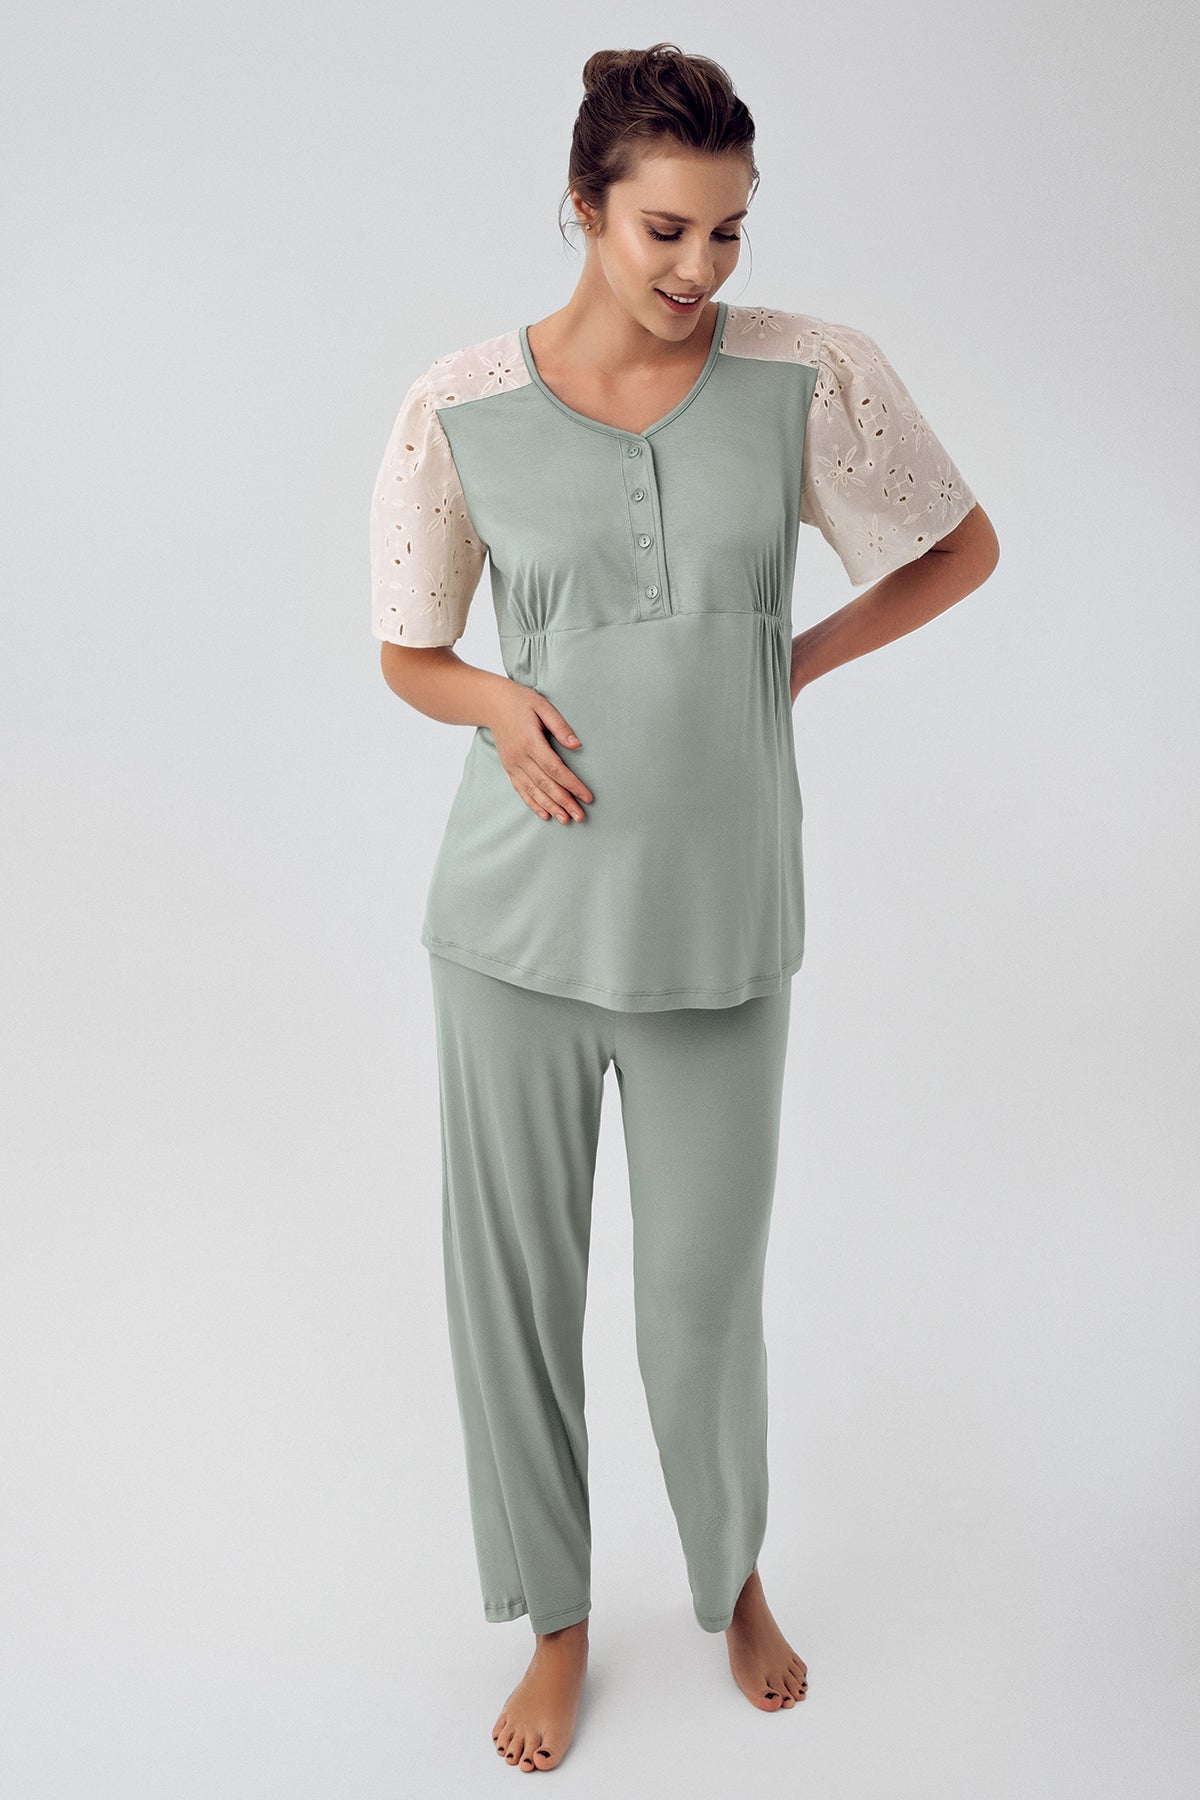 Shopymommy 16206 Lace Sleeve Maternity & Nursing Pajamas Green